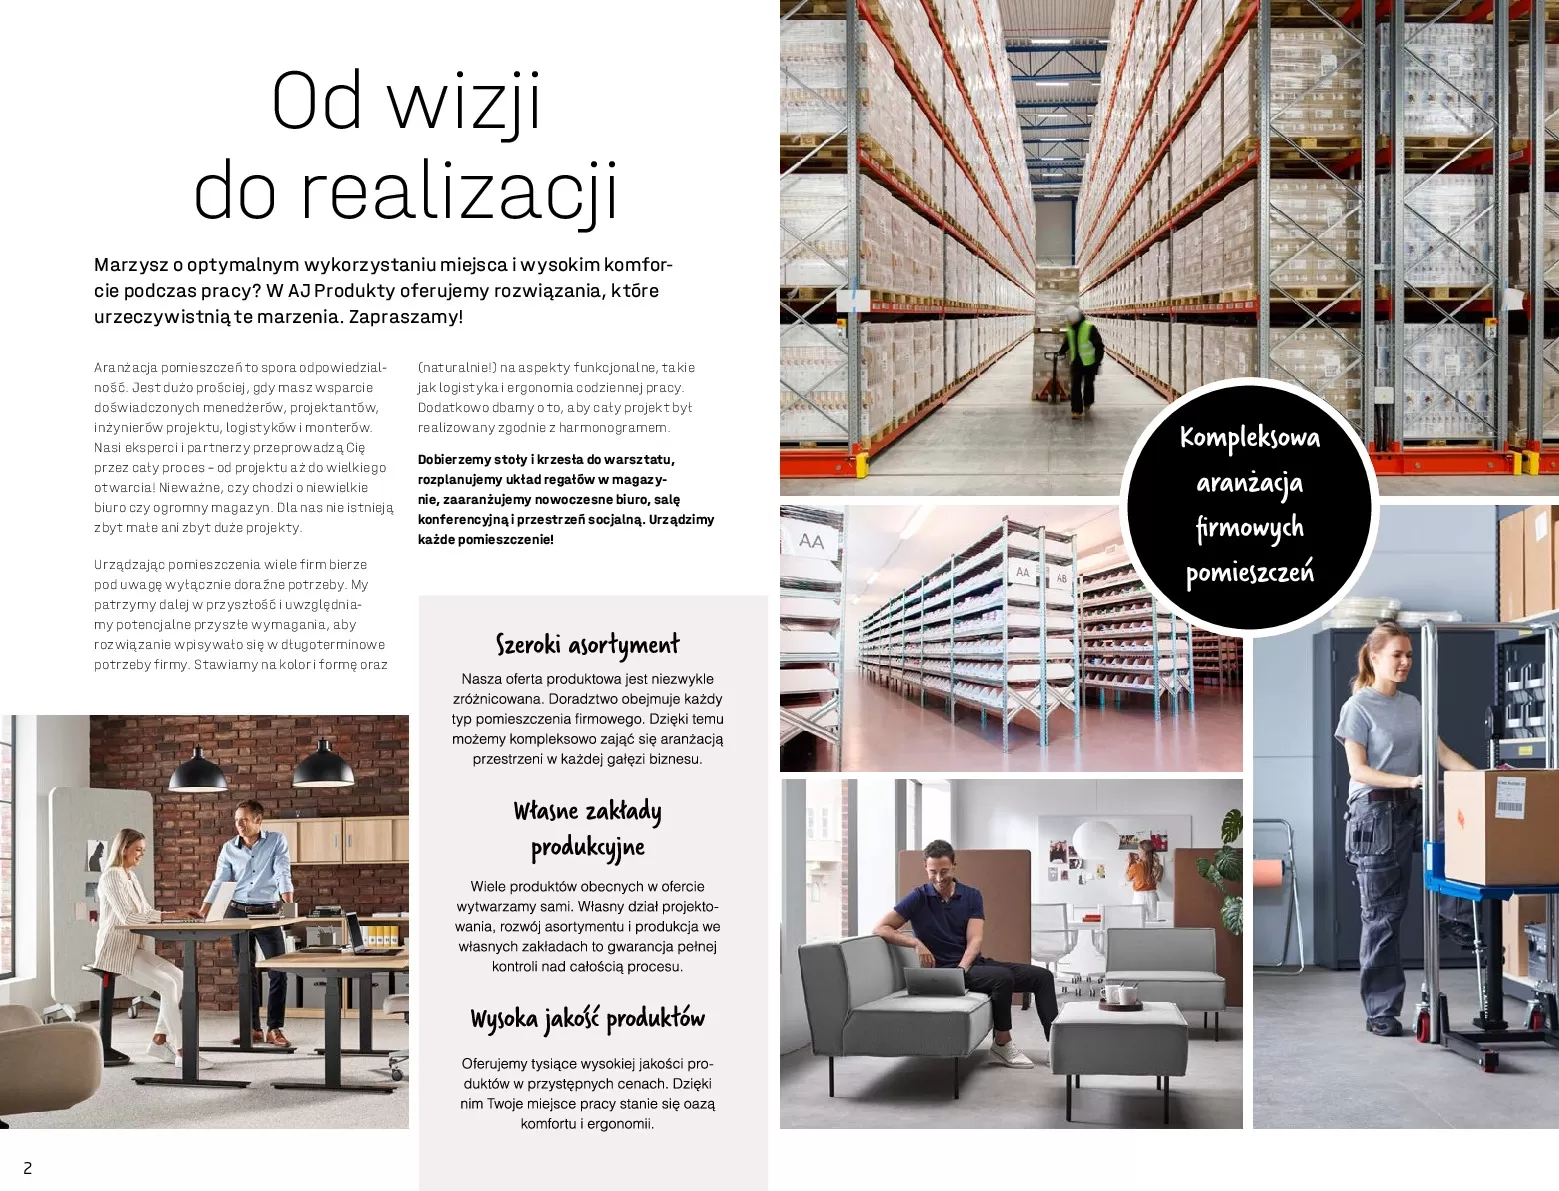 Gazetka promocyjna AJ Produkty - Warsztat, Przemysł, Magazyna - ważna 01.01 do 31.12.2020 - strona 2